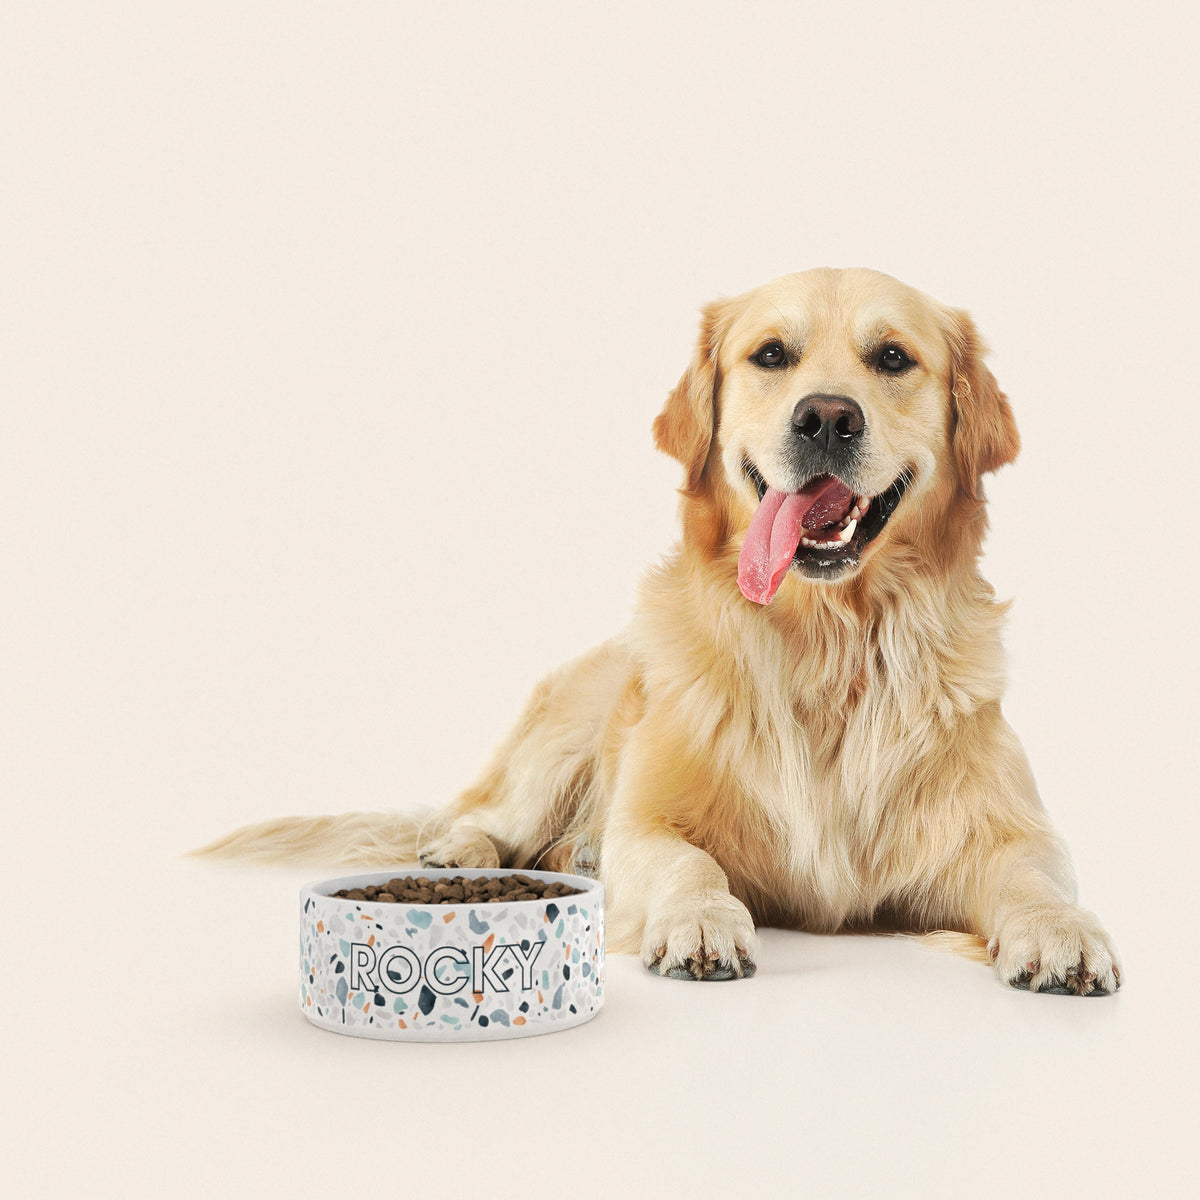 Un golden retriever assis à côté d'un bol pour chien au motif Terrazzo personnalisé avec le nom ROCKY